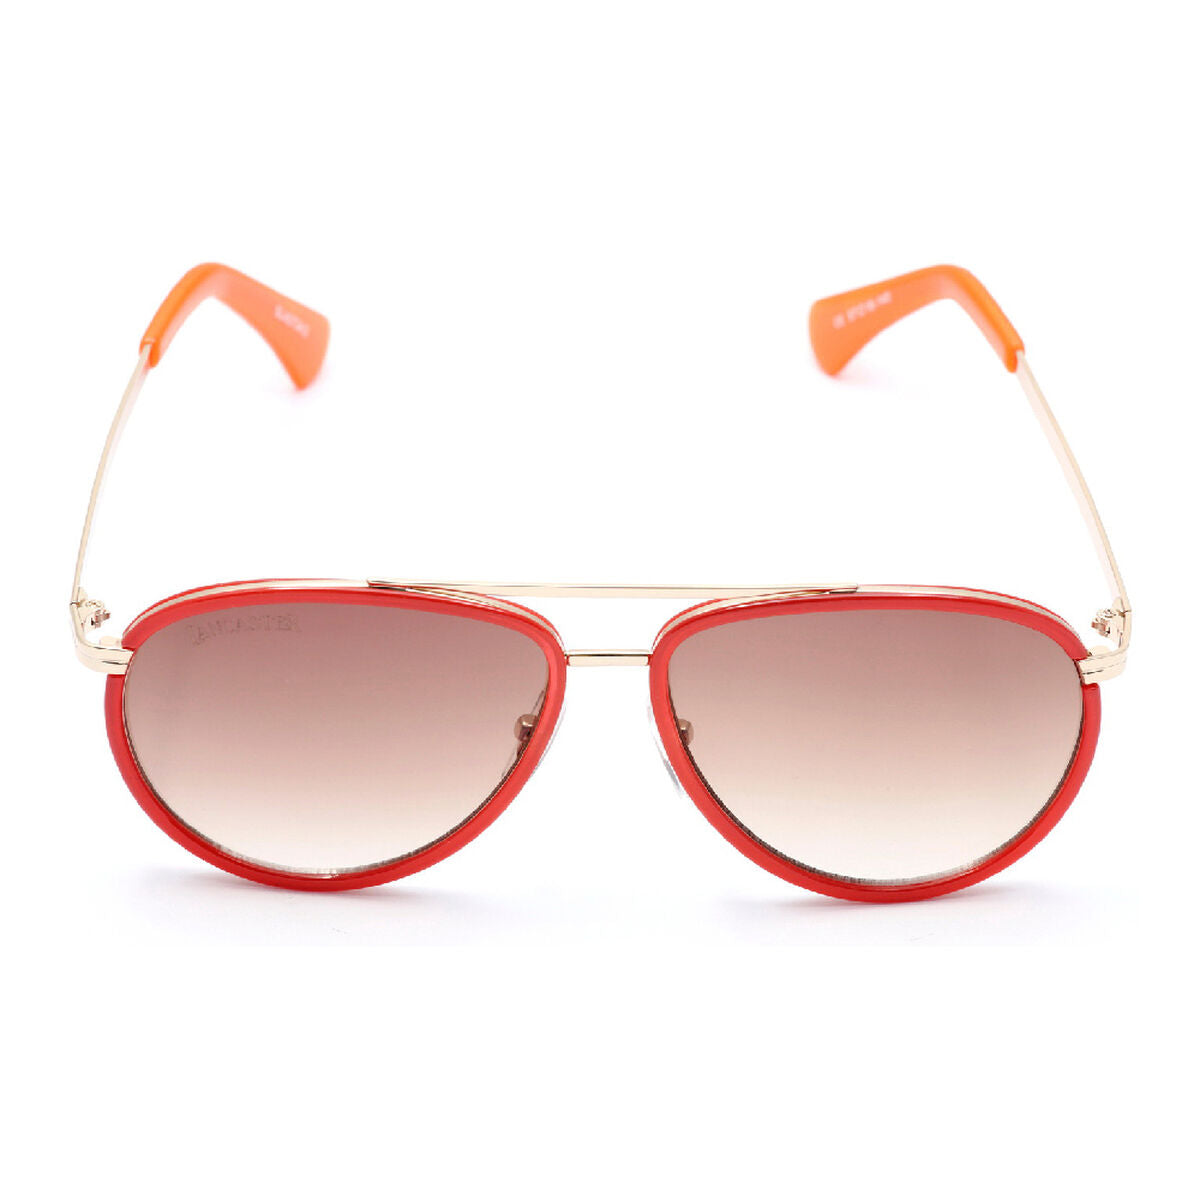 Ladies'Sunglasses Lancaster